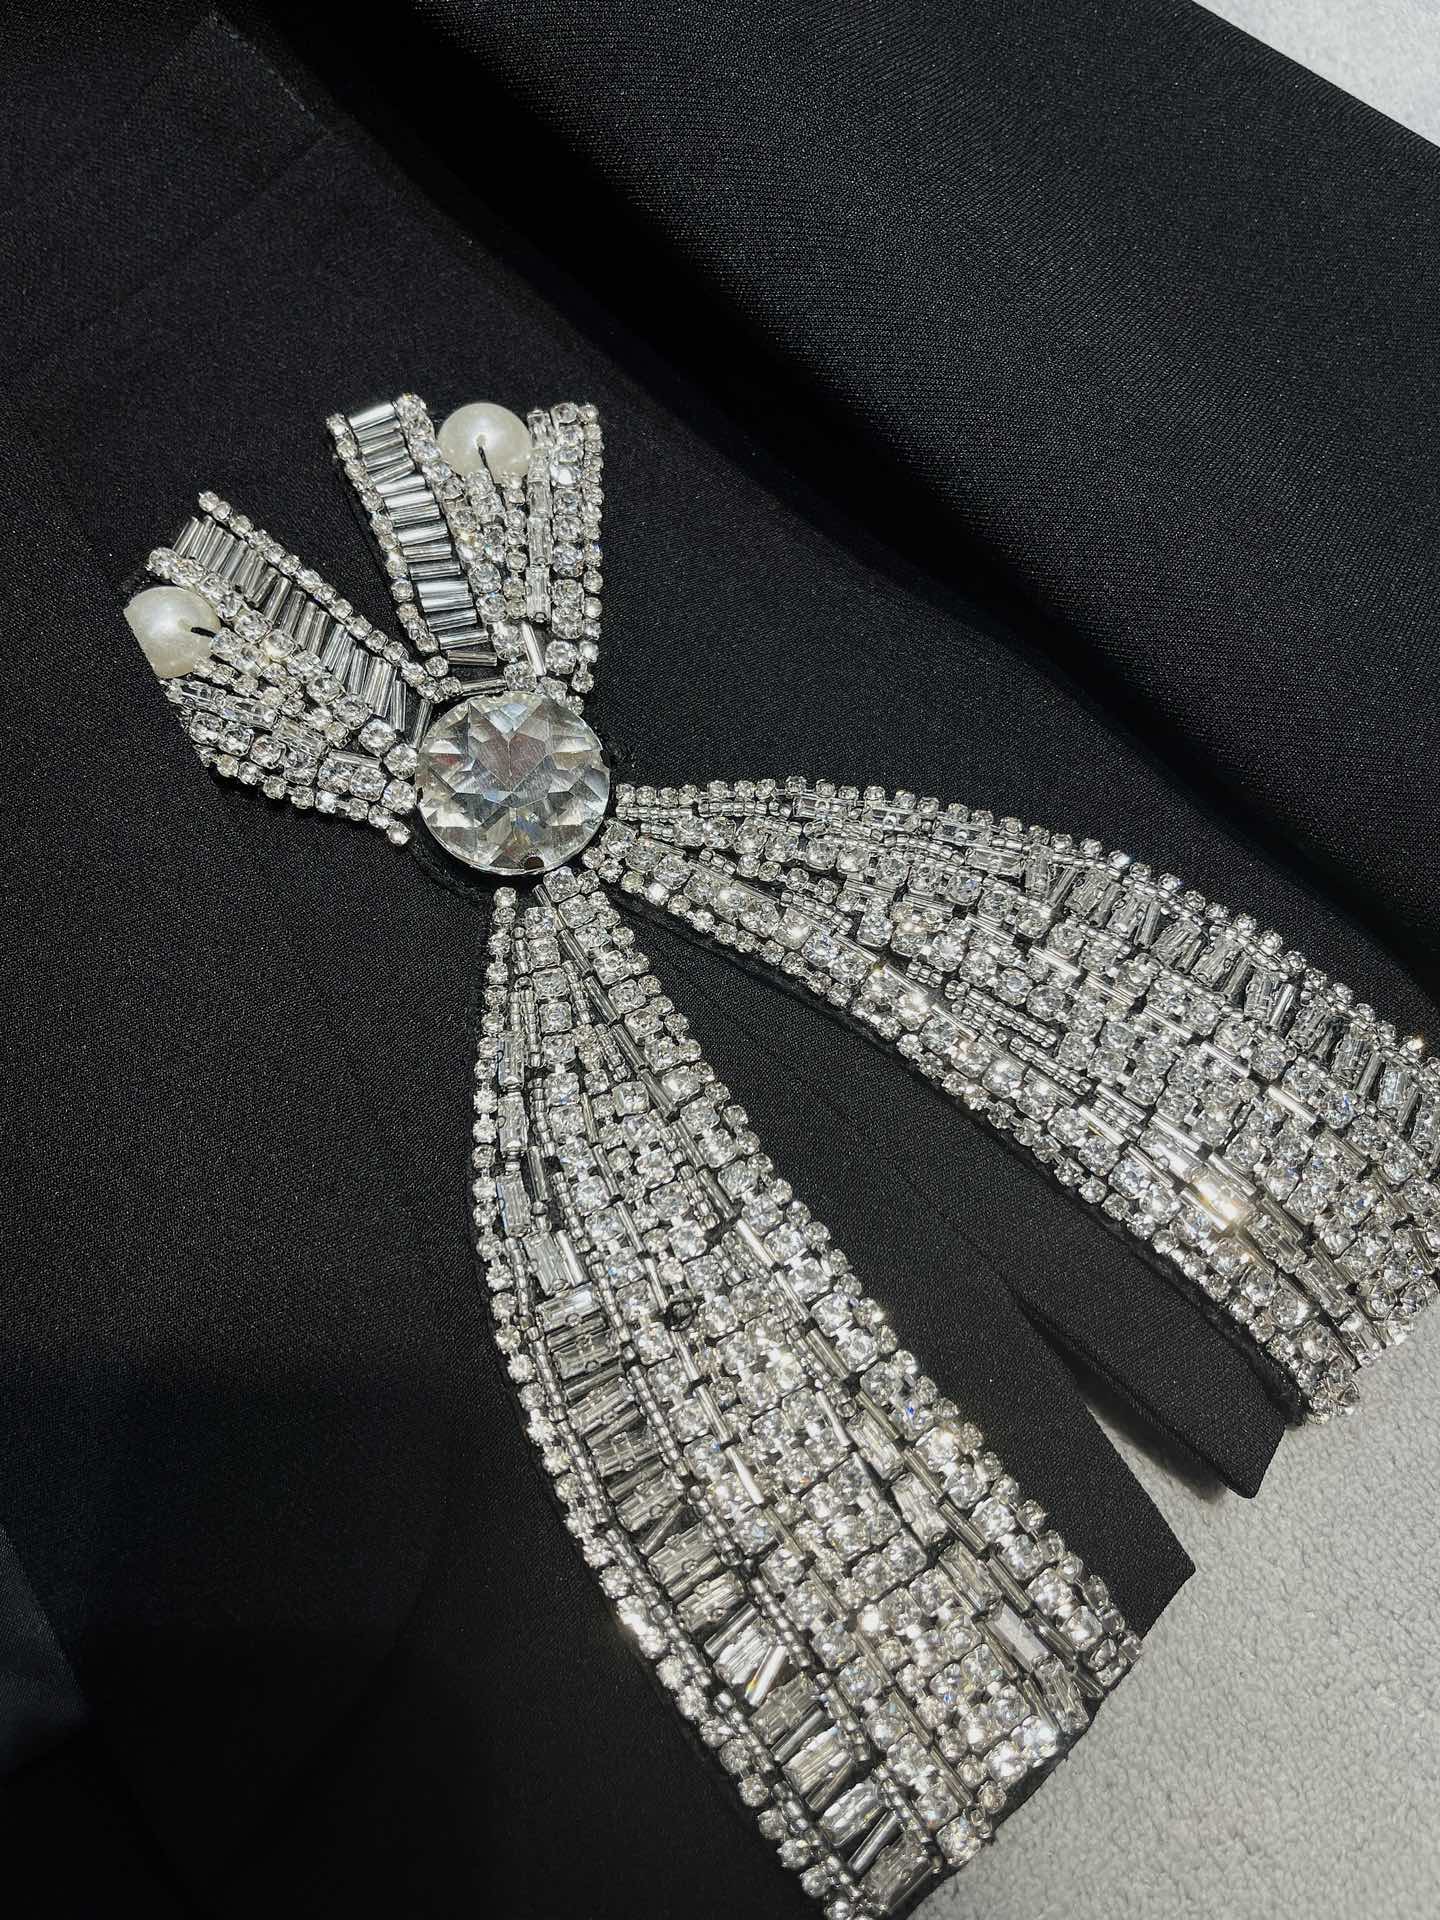 BALMAI*大蝴蝶结钻石短款小西装今年最流行时尚耀眼的个性设计风格面料采用进口醋酸蝴蝶结钻的细节设计闪